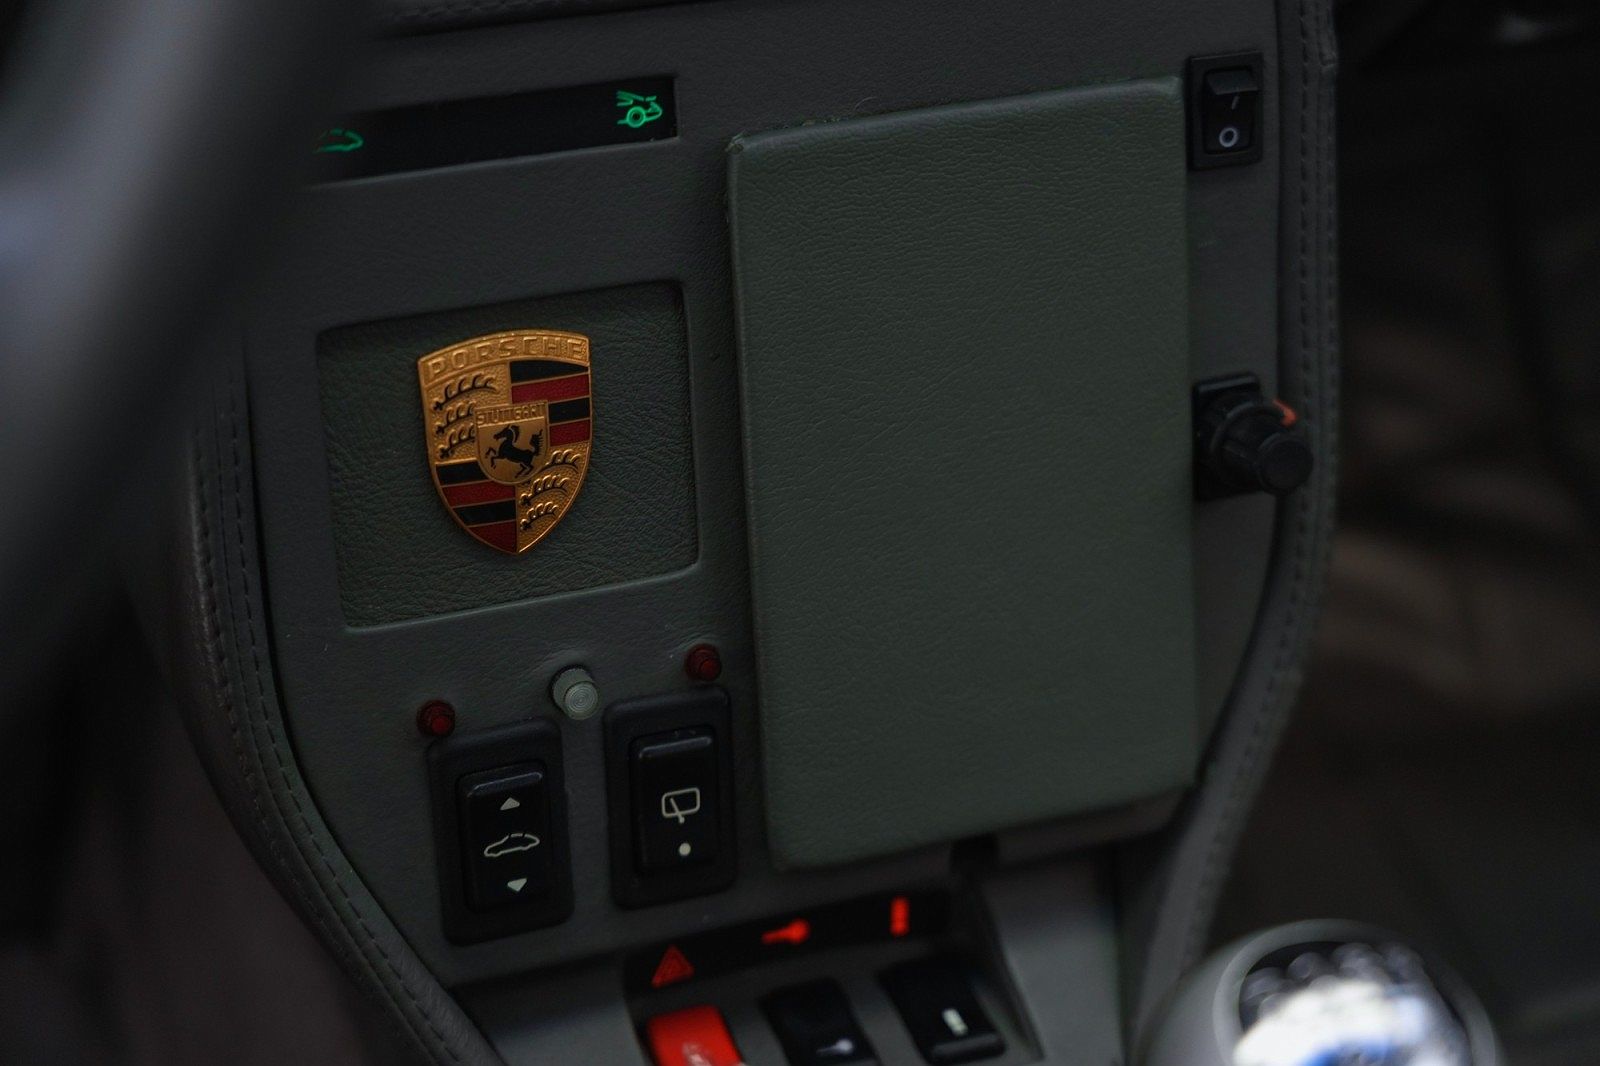 1996 Porsche 911 Turbo image 21